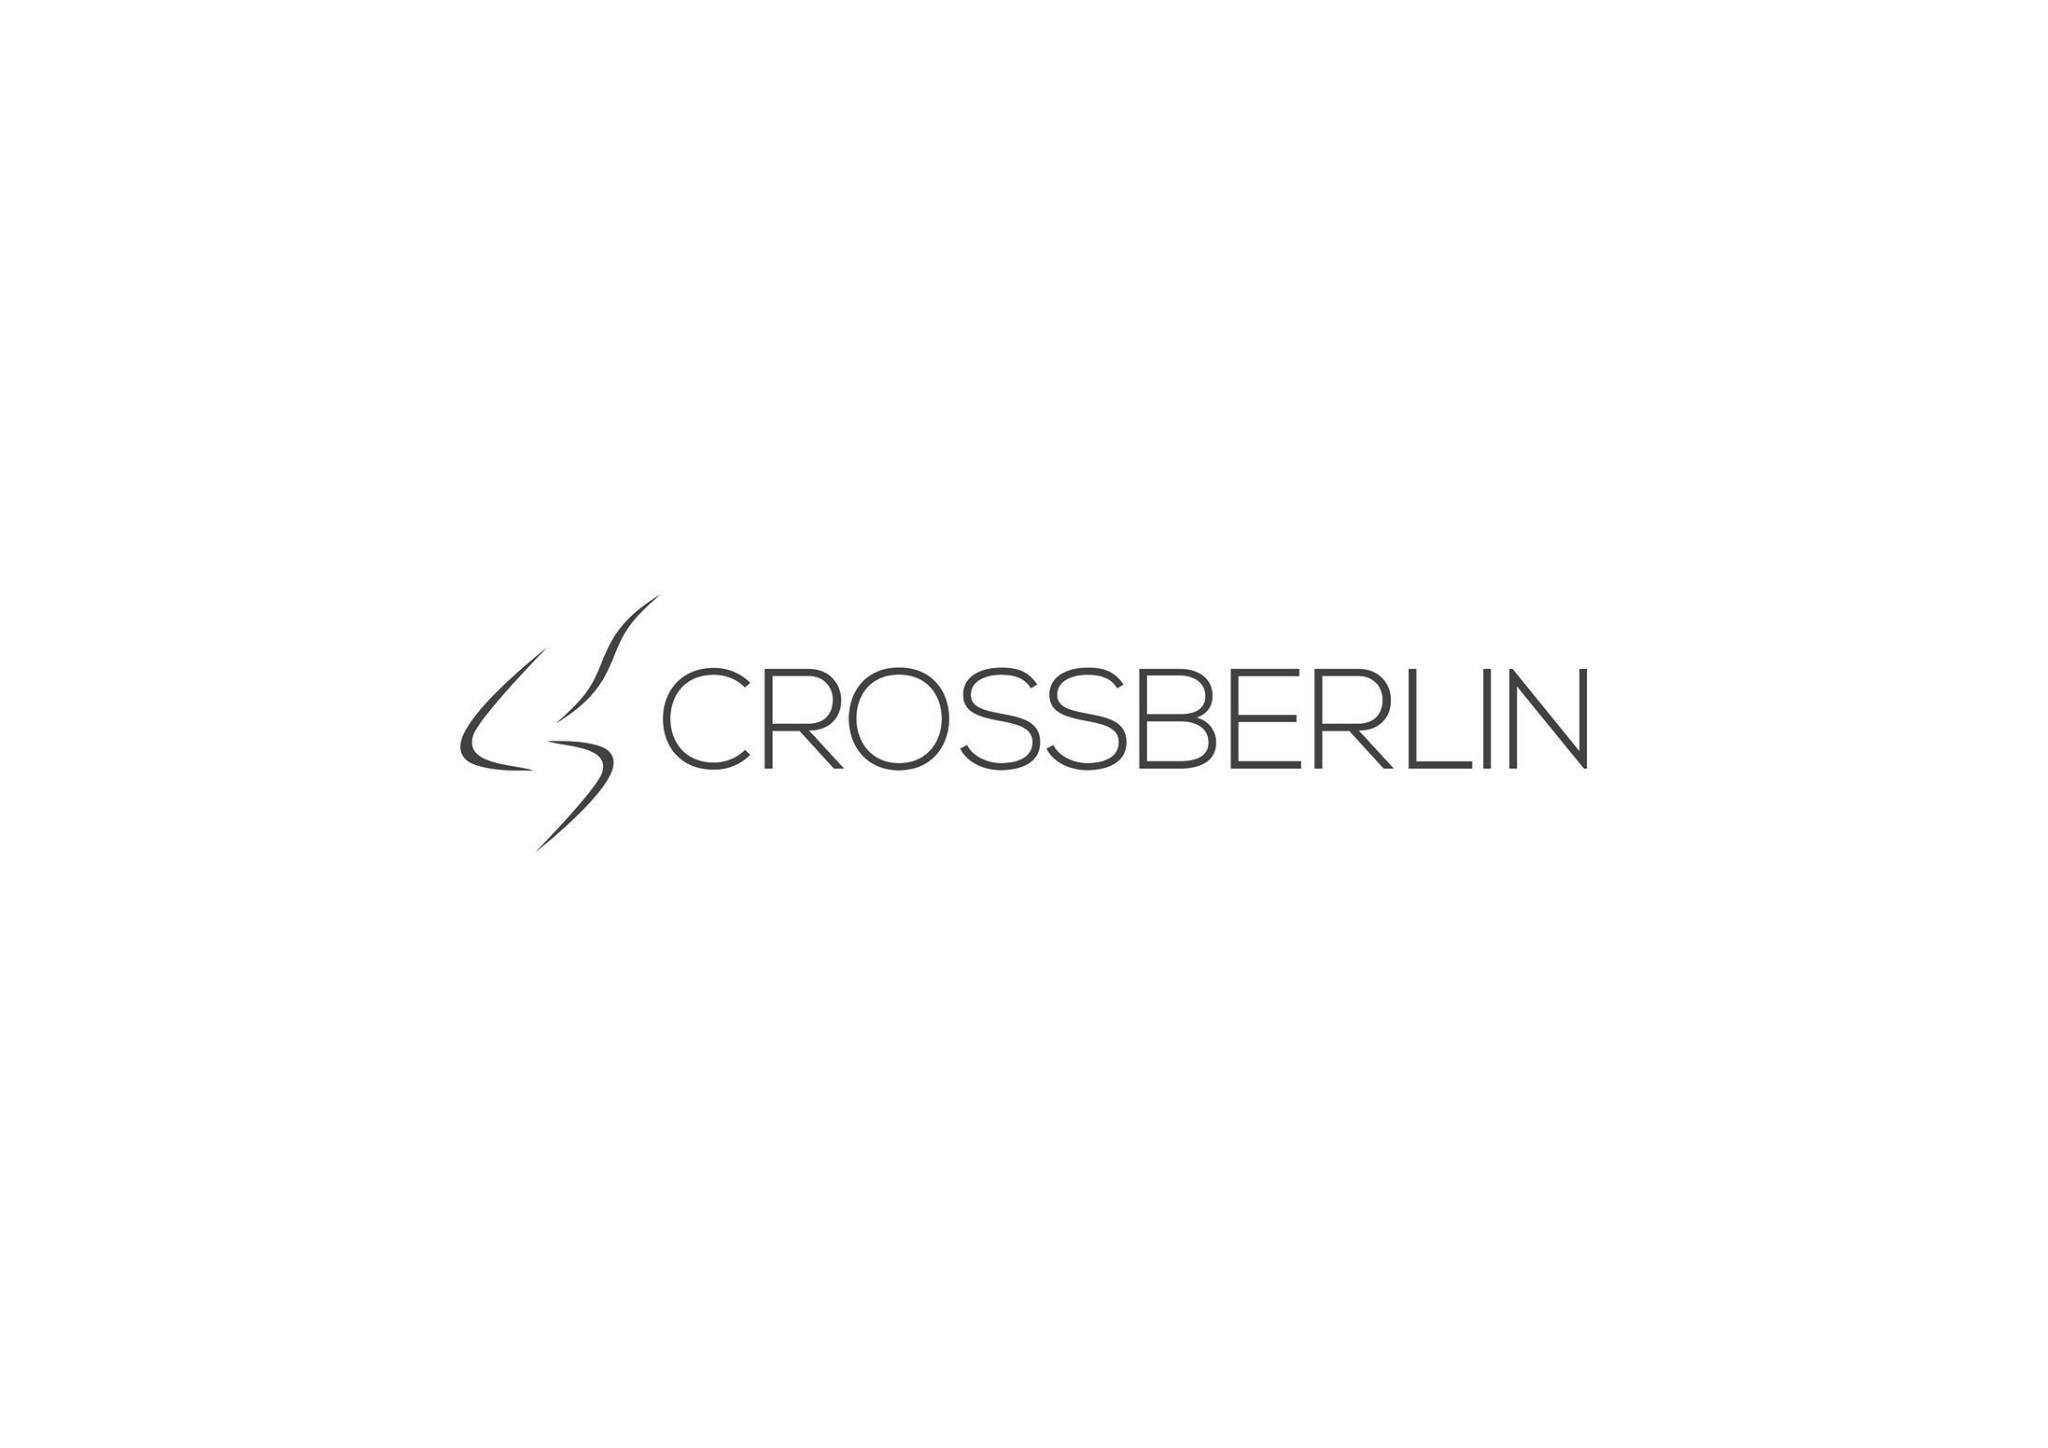 Crossberlin